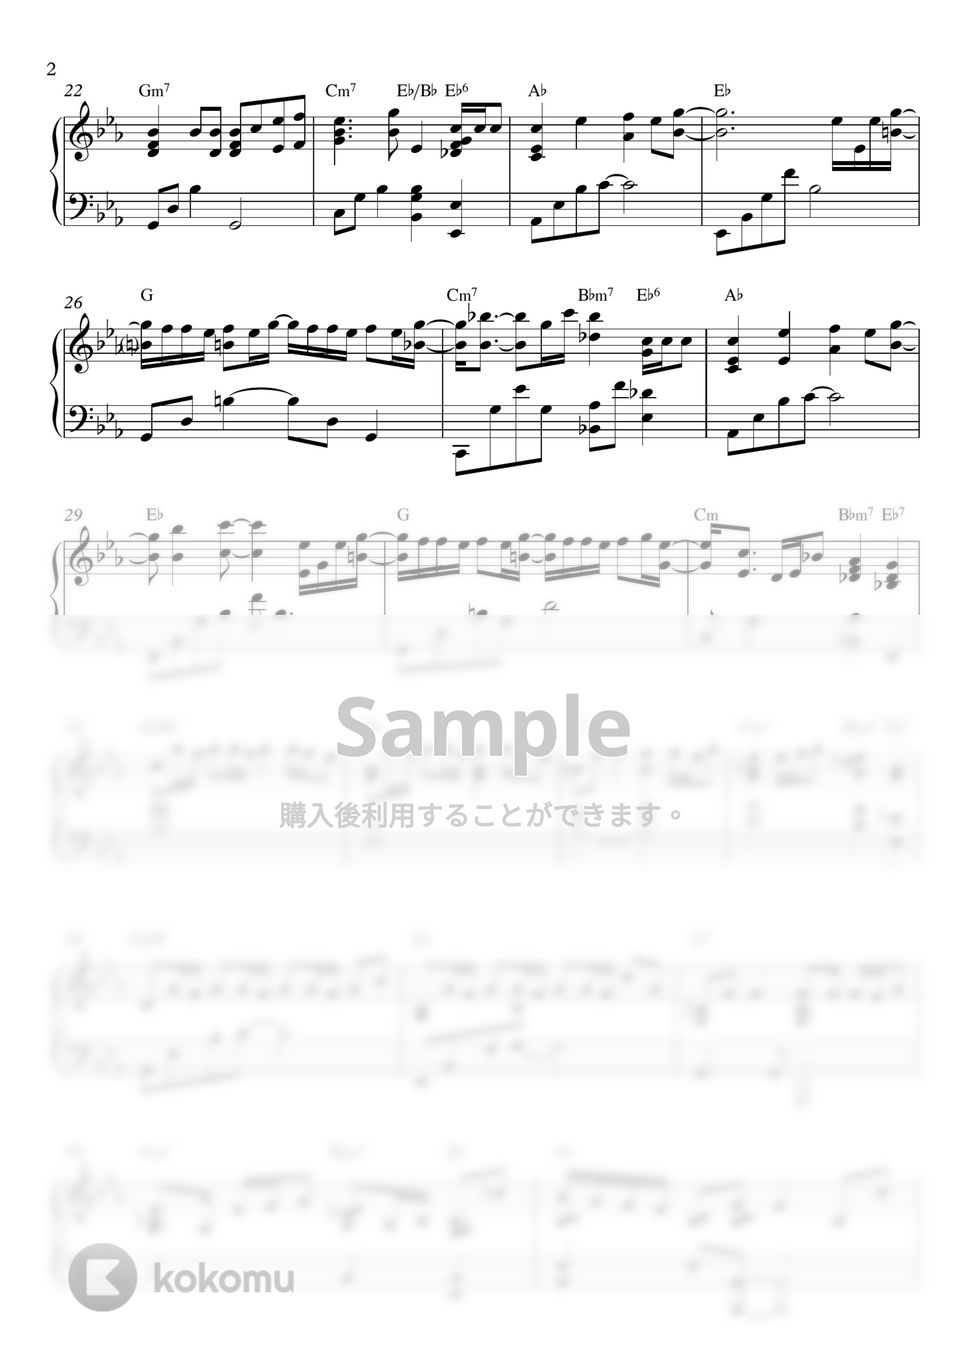 防弾少年団(BTS) - Awake (JIN OF BTS) by ピアノオタク